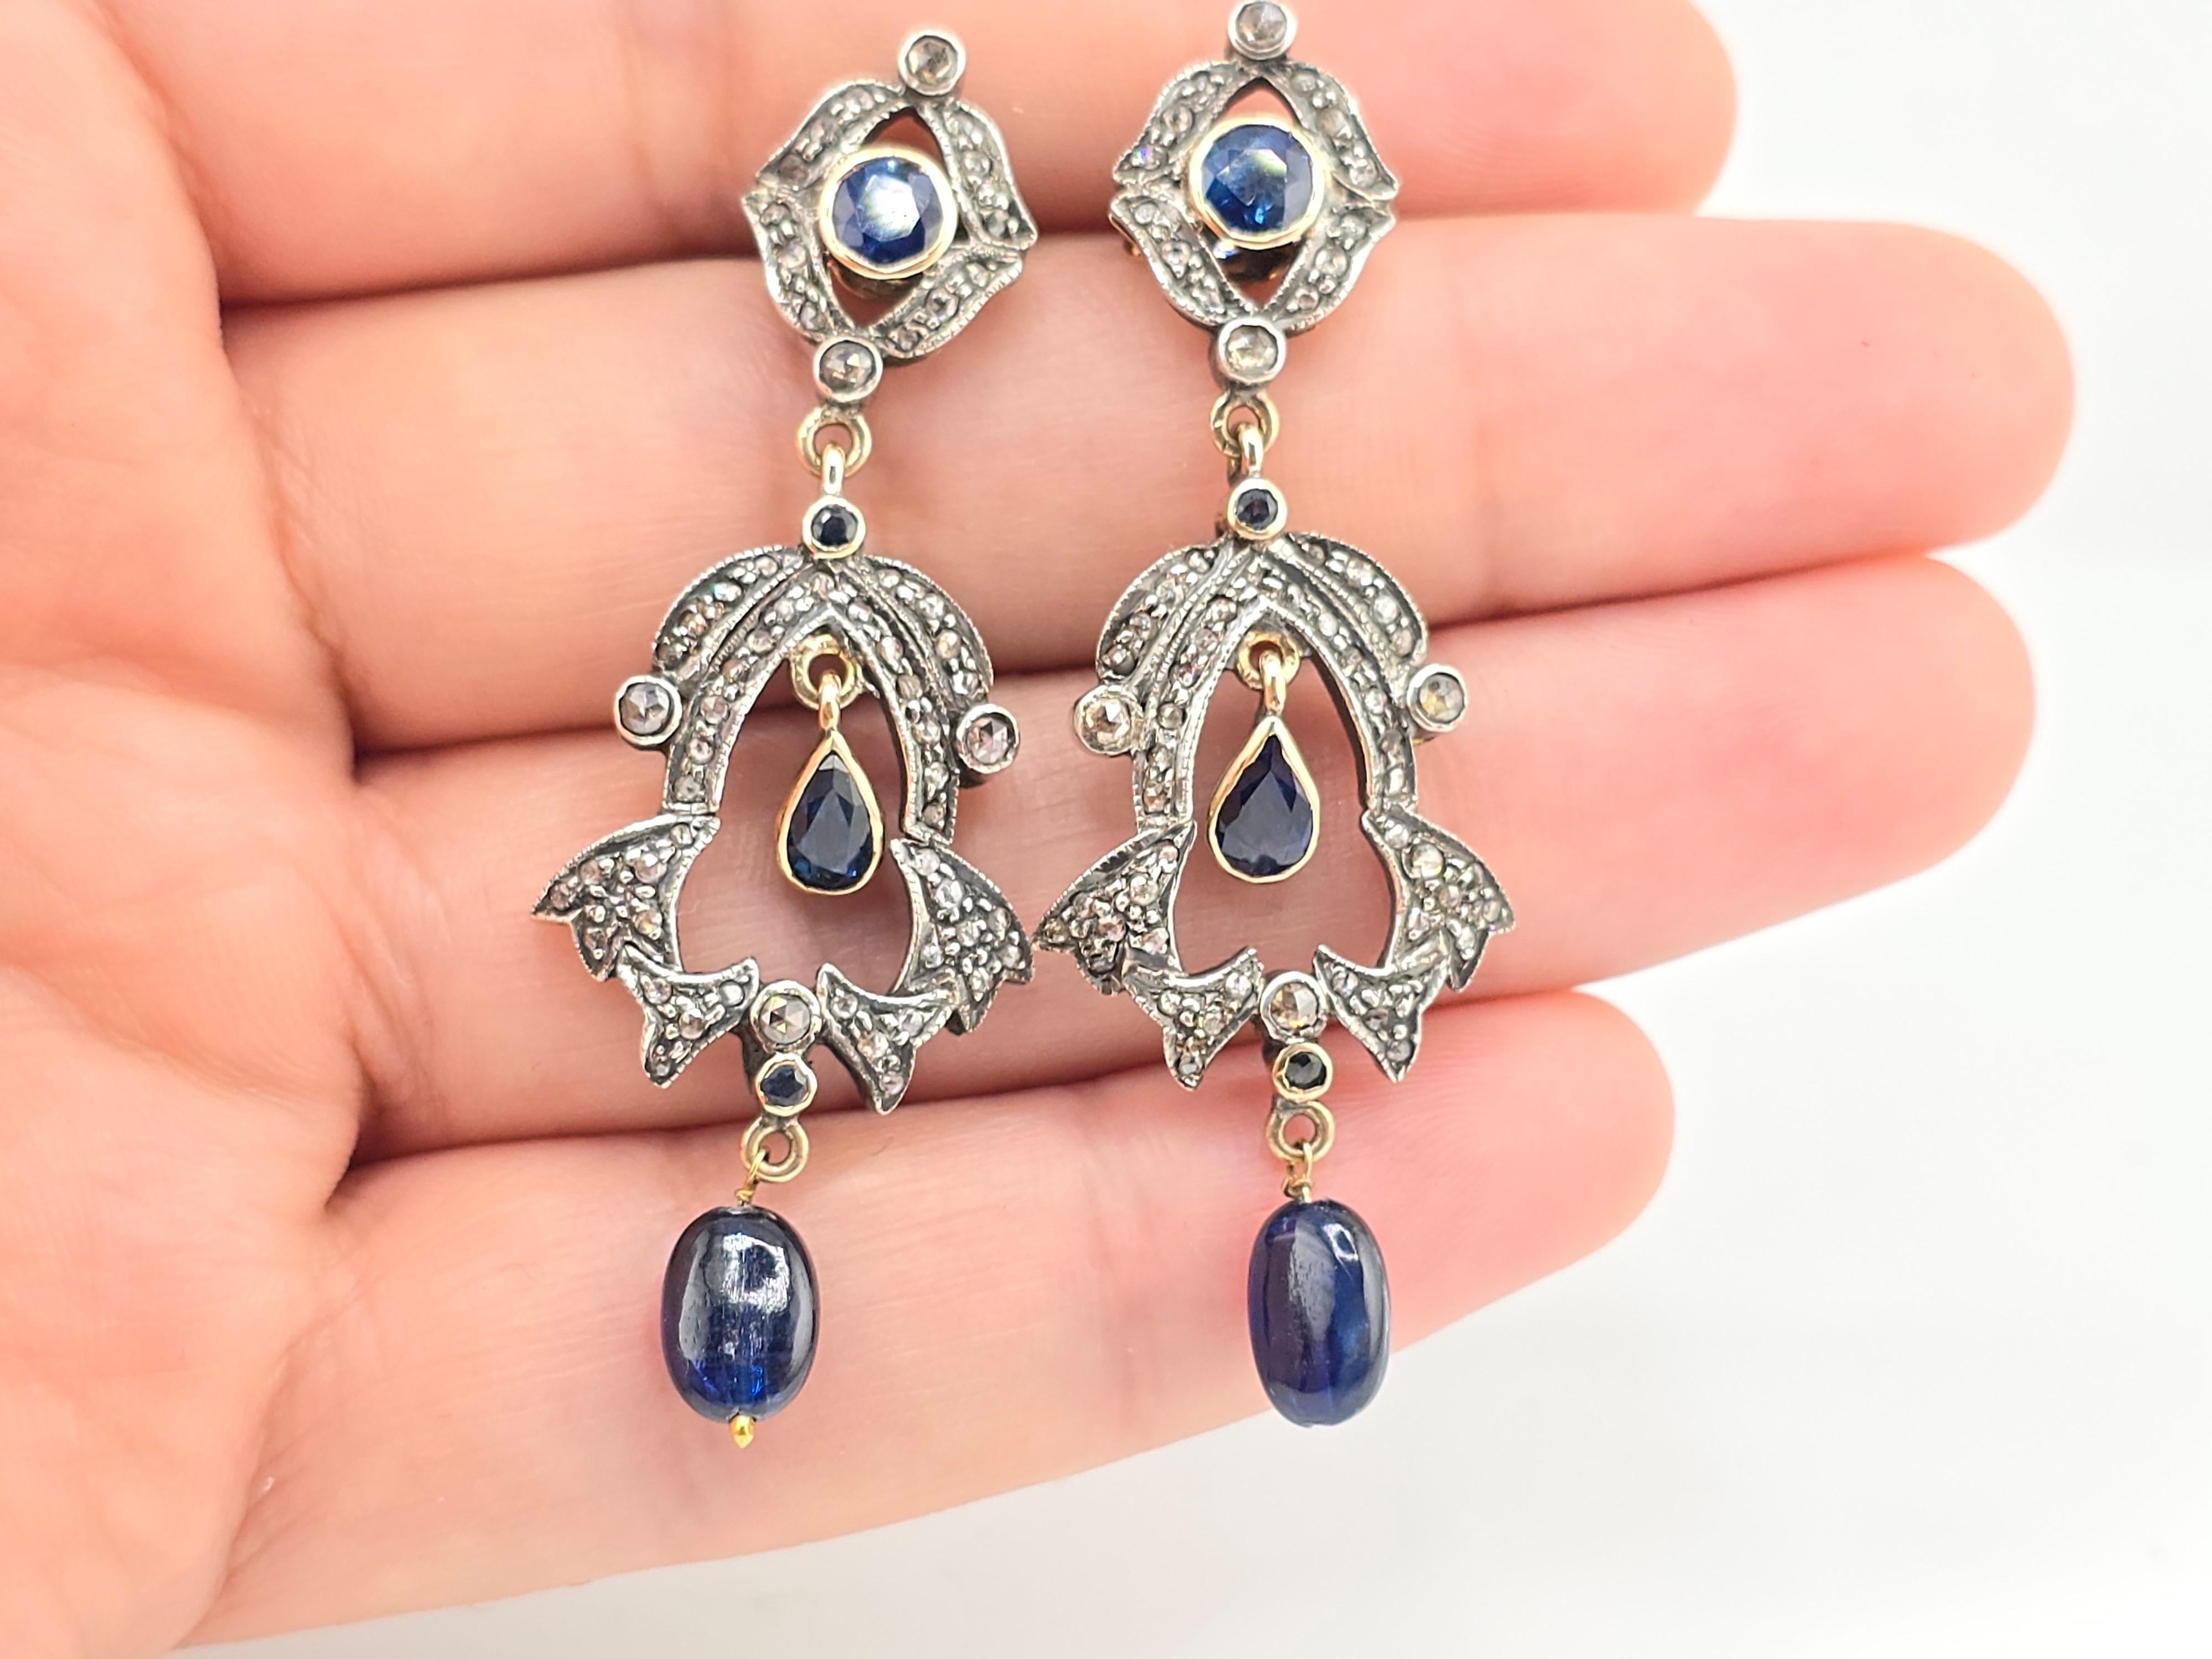 Dies ist ein wunderschönes Paar Ohrringe mit Diamanten und Saphiren aus der viktorianischen Ära. Rund um die Ohrringe sind Diamanten im Minenschliff mit schönen, reichen, lebendigen Saphiren. Das MATERIAL ist, glaube ich, aus 14 Karat Gelbgold und